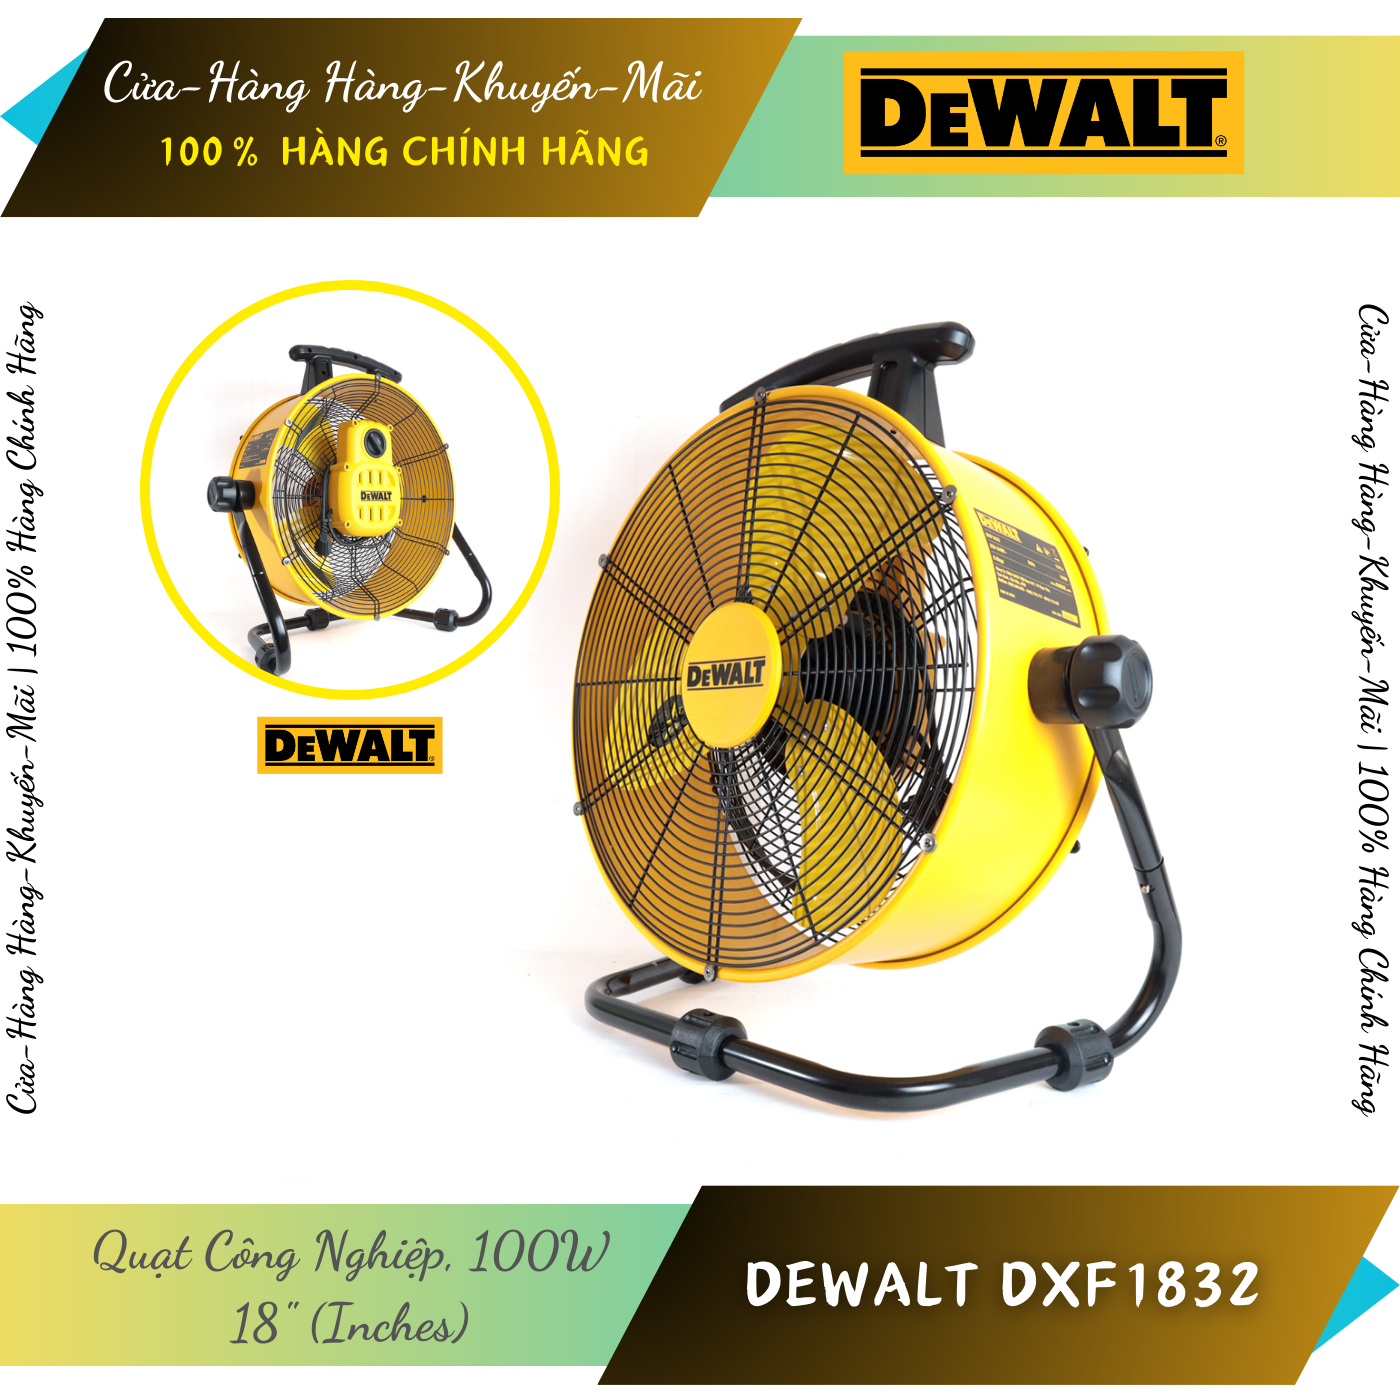 DeWALT DXF1832 | Quạt Sàn Công Nghiệp 18 Inch DeWALT DXF1832 100W - Motor Không Chổi Than - Hàng Chính Hãng